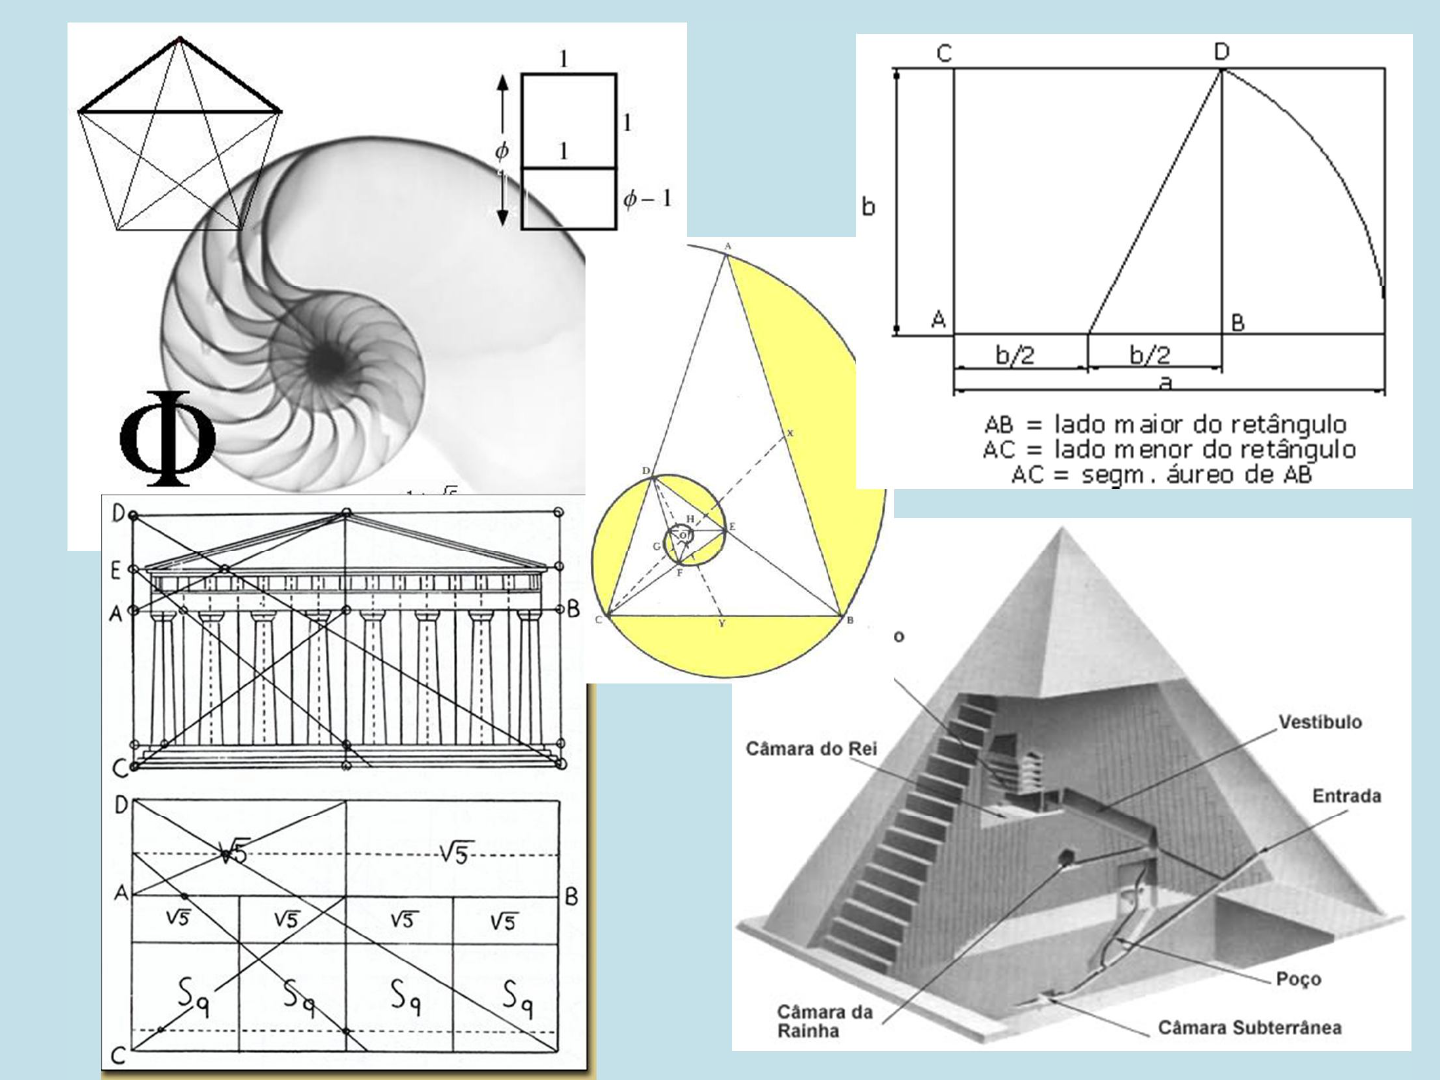 geometria sagrada pdf